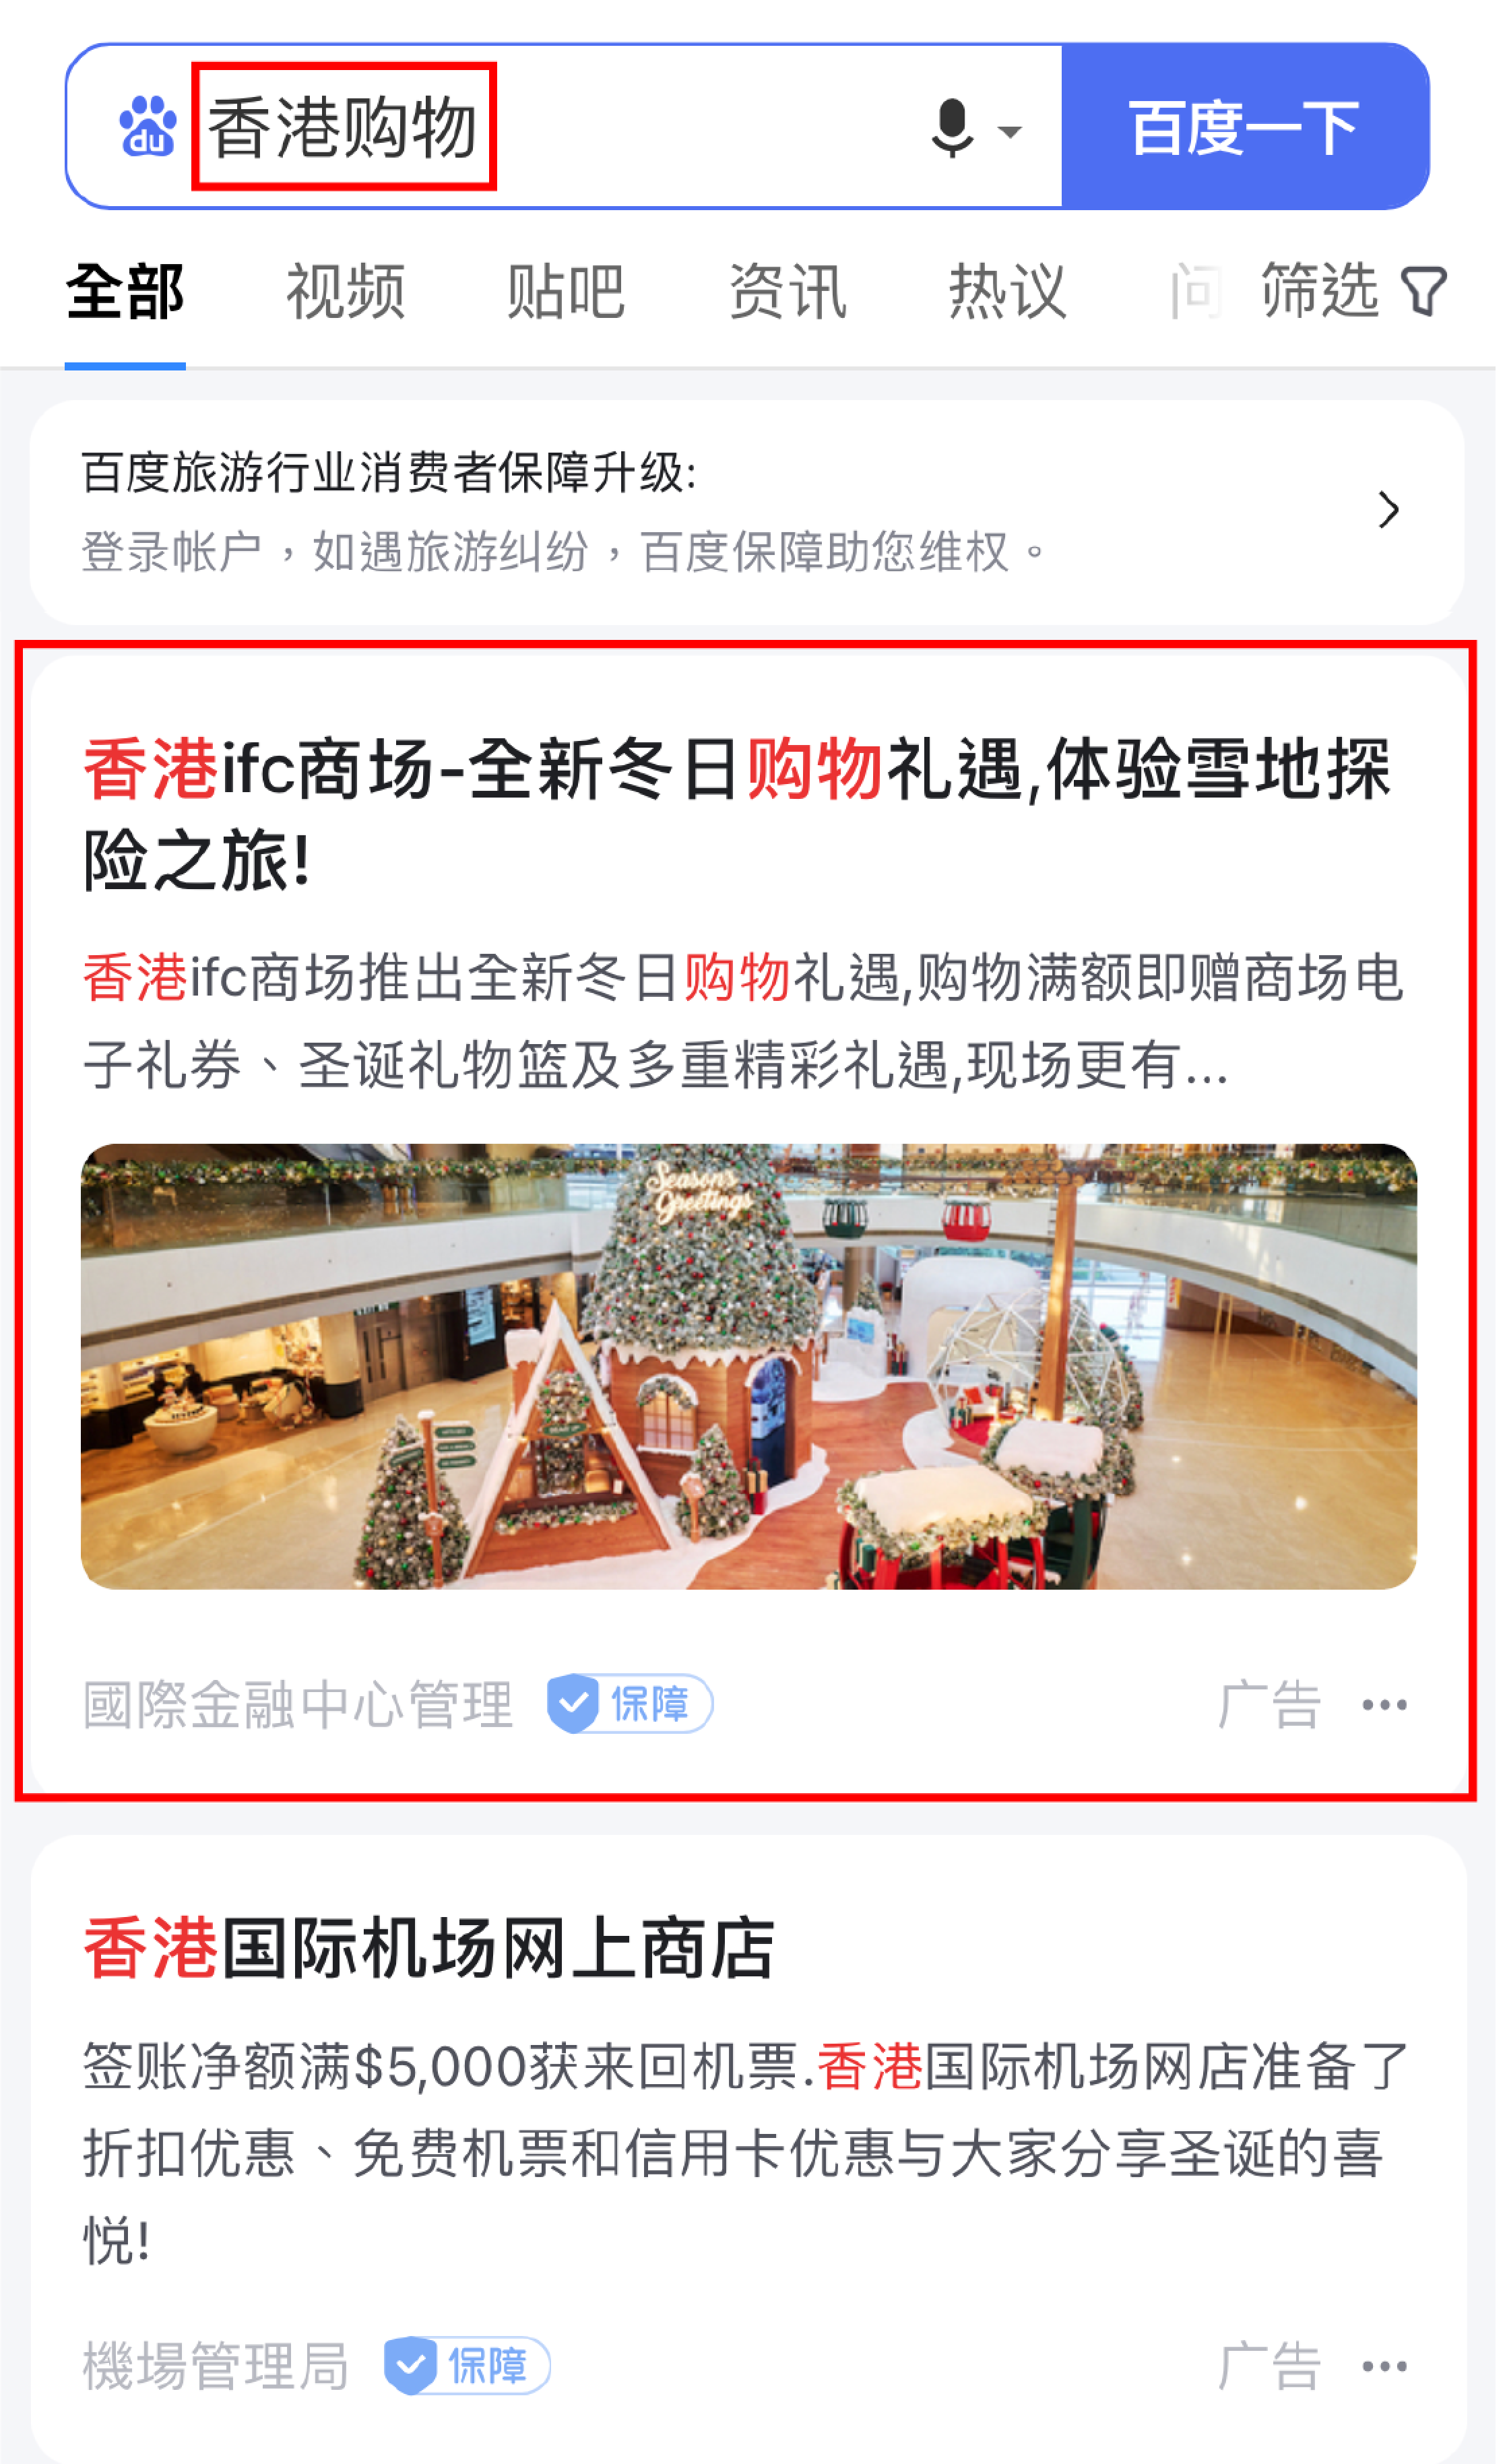 China-Marketing-INITSOC-ifc mall-Baidu ad